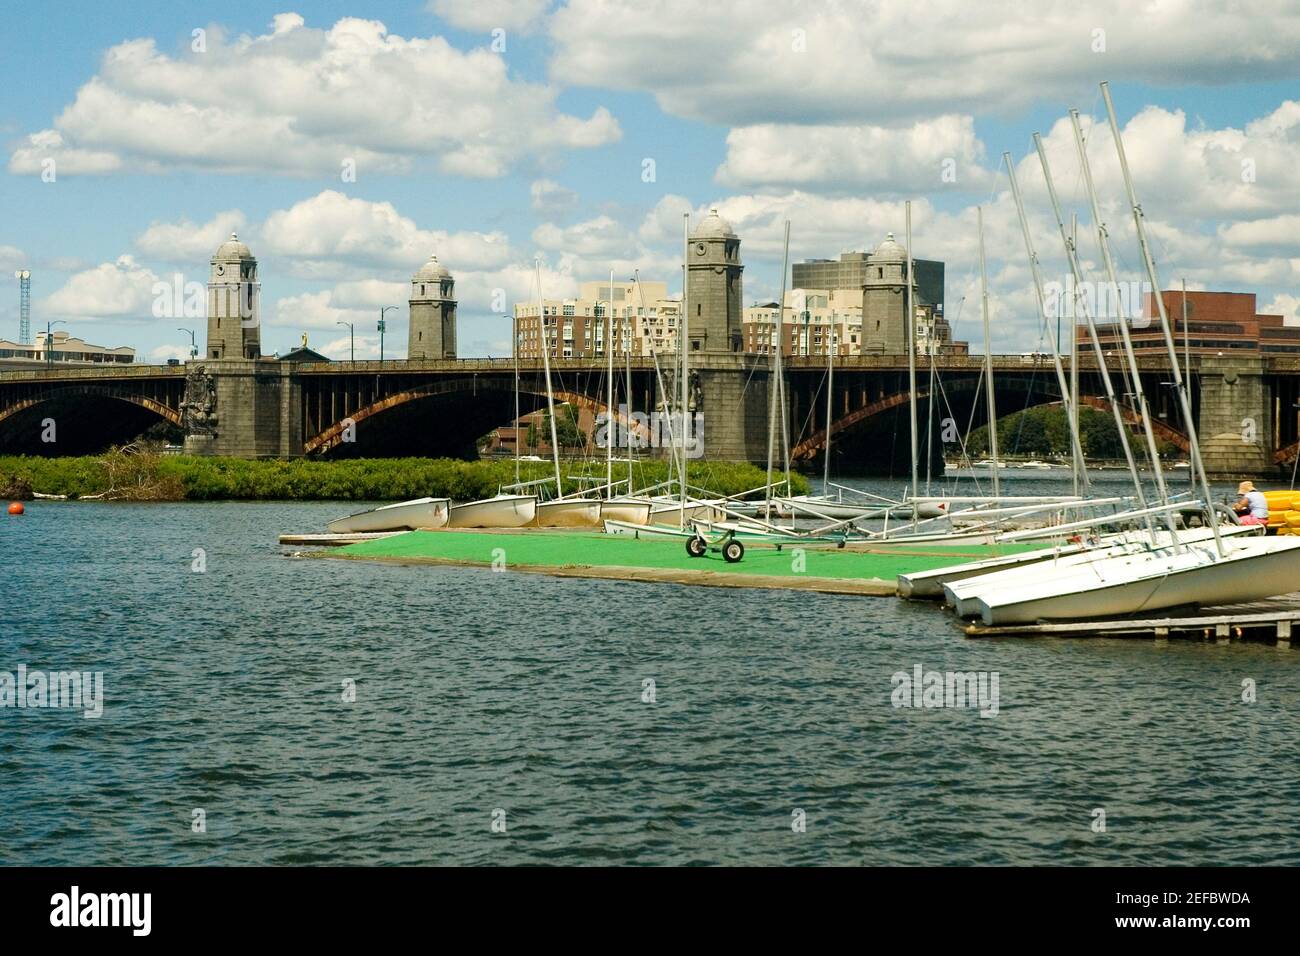 Barche a vela ancorate nel fiume vicino ad un ponte ad arco, Boston, Massachusetts, USA Foto Stock